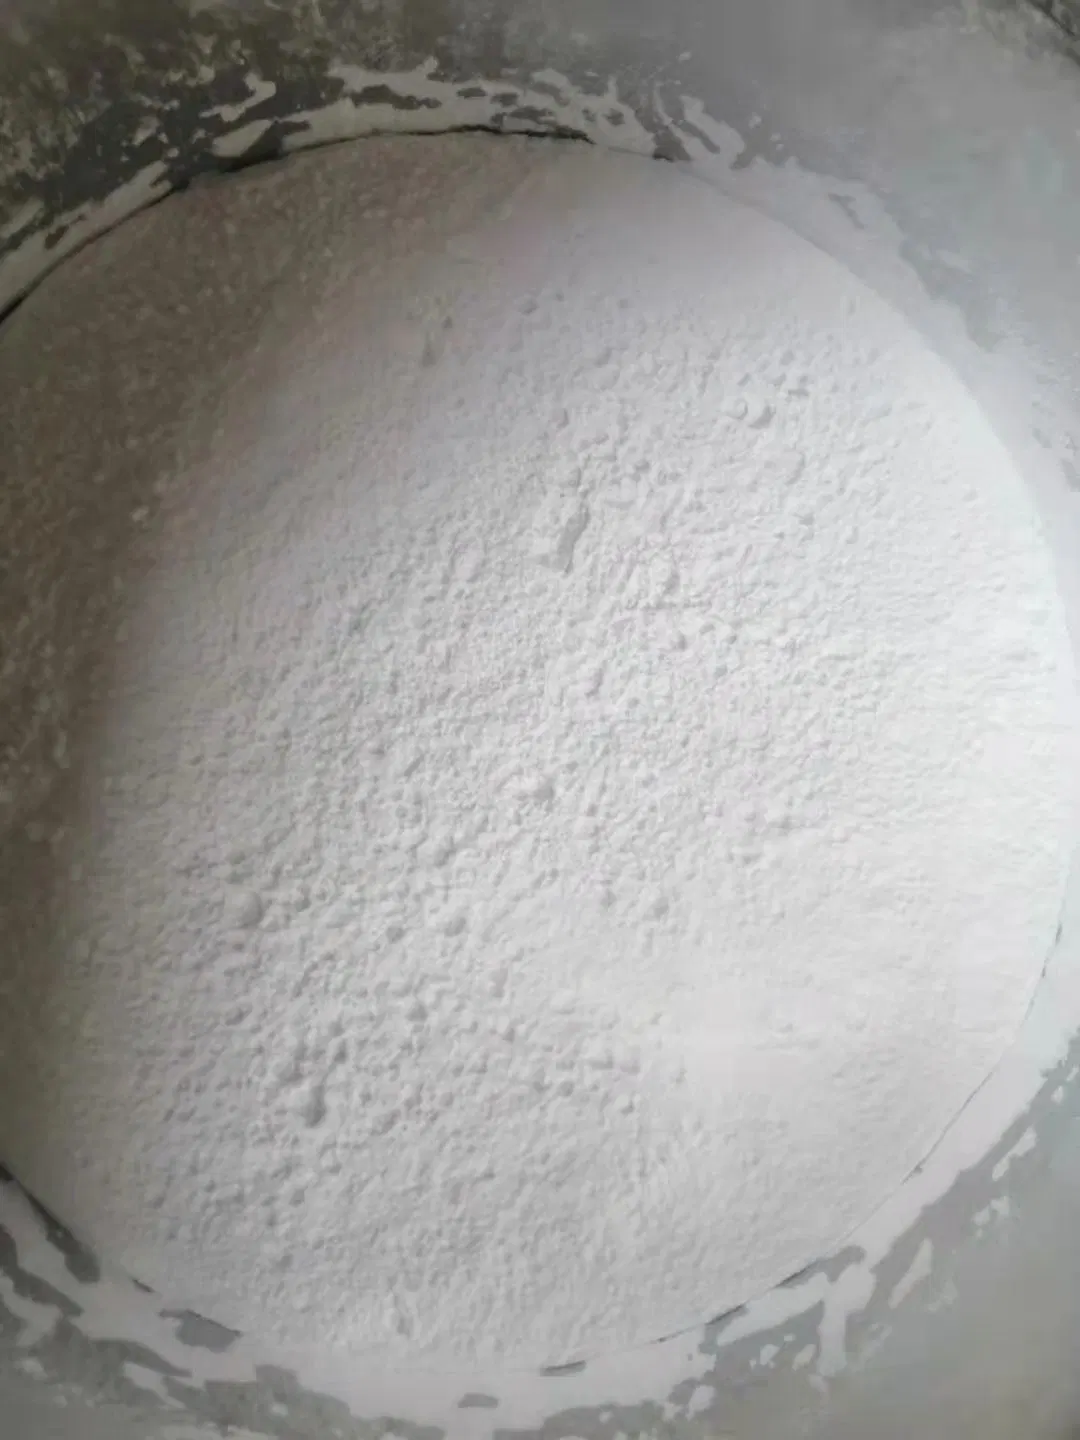 Haute pureté de la poudre de nitrate de thiamine CAS 532-43-4 avec une livraison sûre